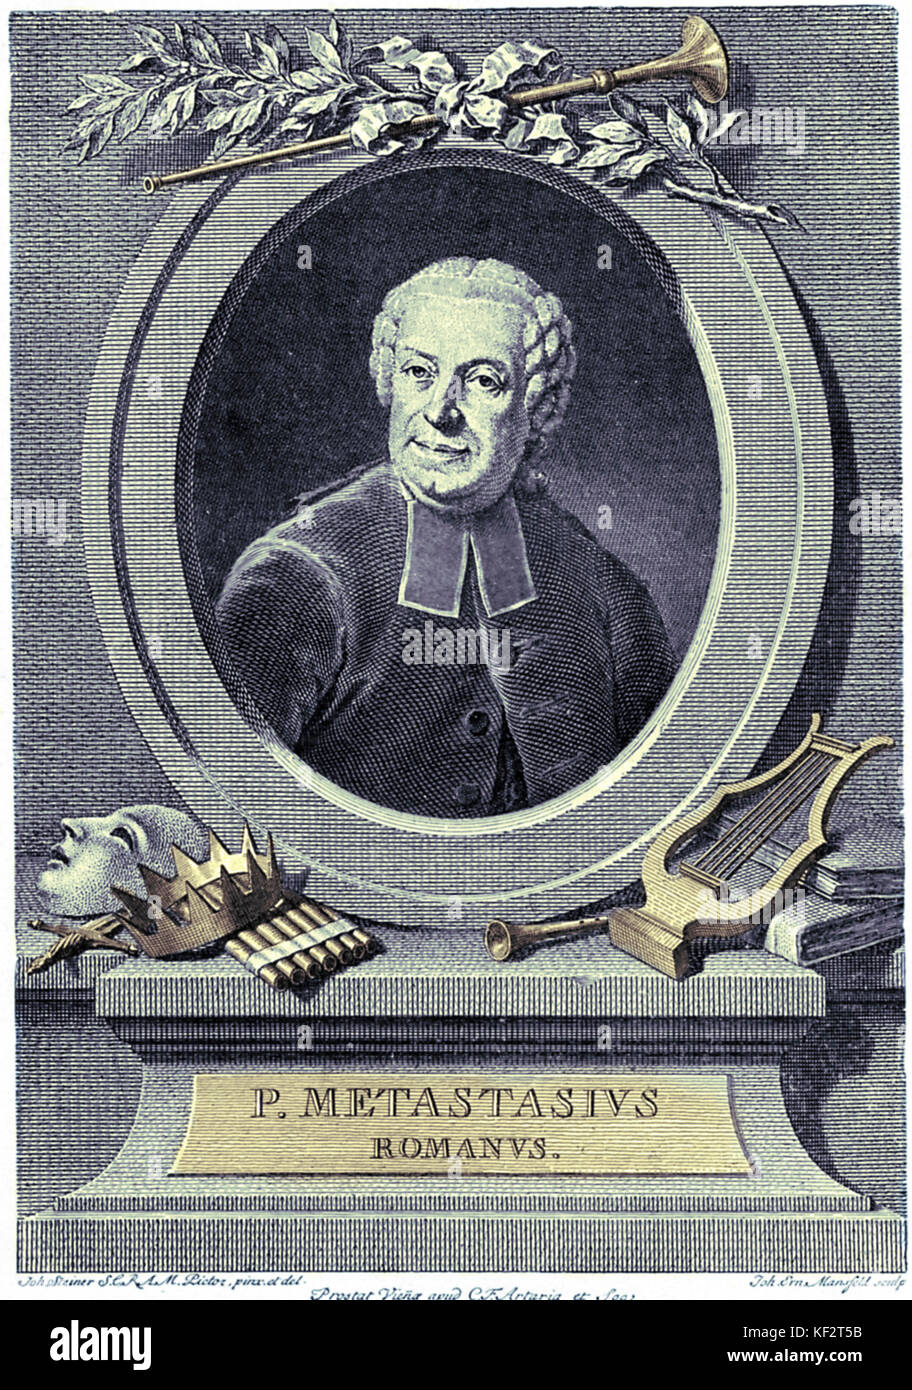 METASTASIO, Pietro - Italian poet and librettist - engraving 1698-1782 Stock Photo